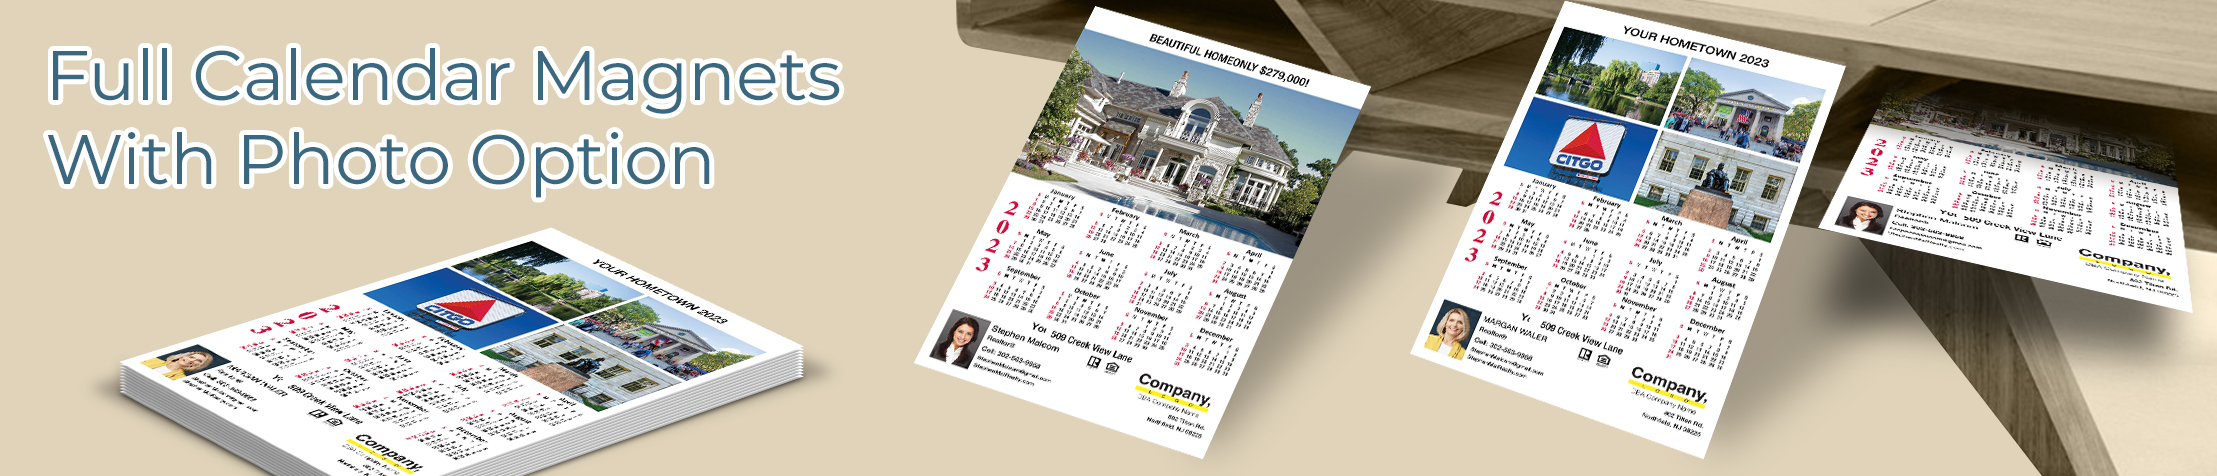 Weichert Real Estate Full Calendar Magnets With Photo Option - Weichert  2019 calendars, full-color | BestPrintBuy.com